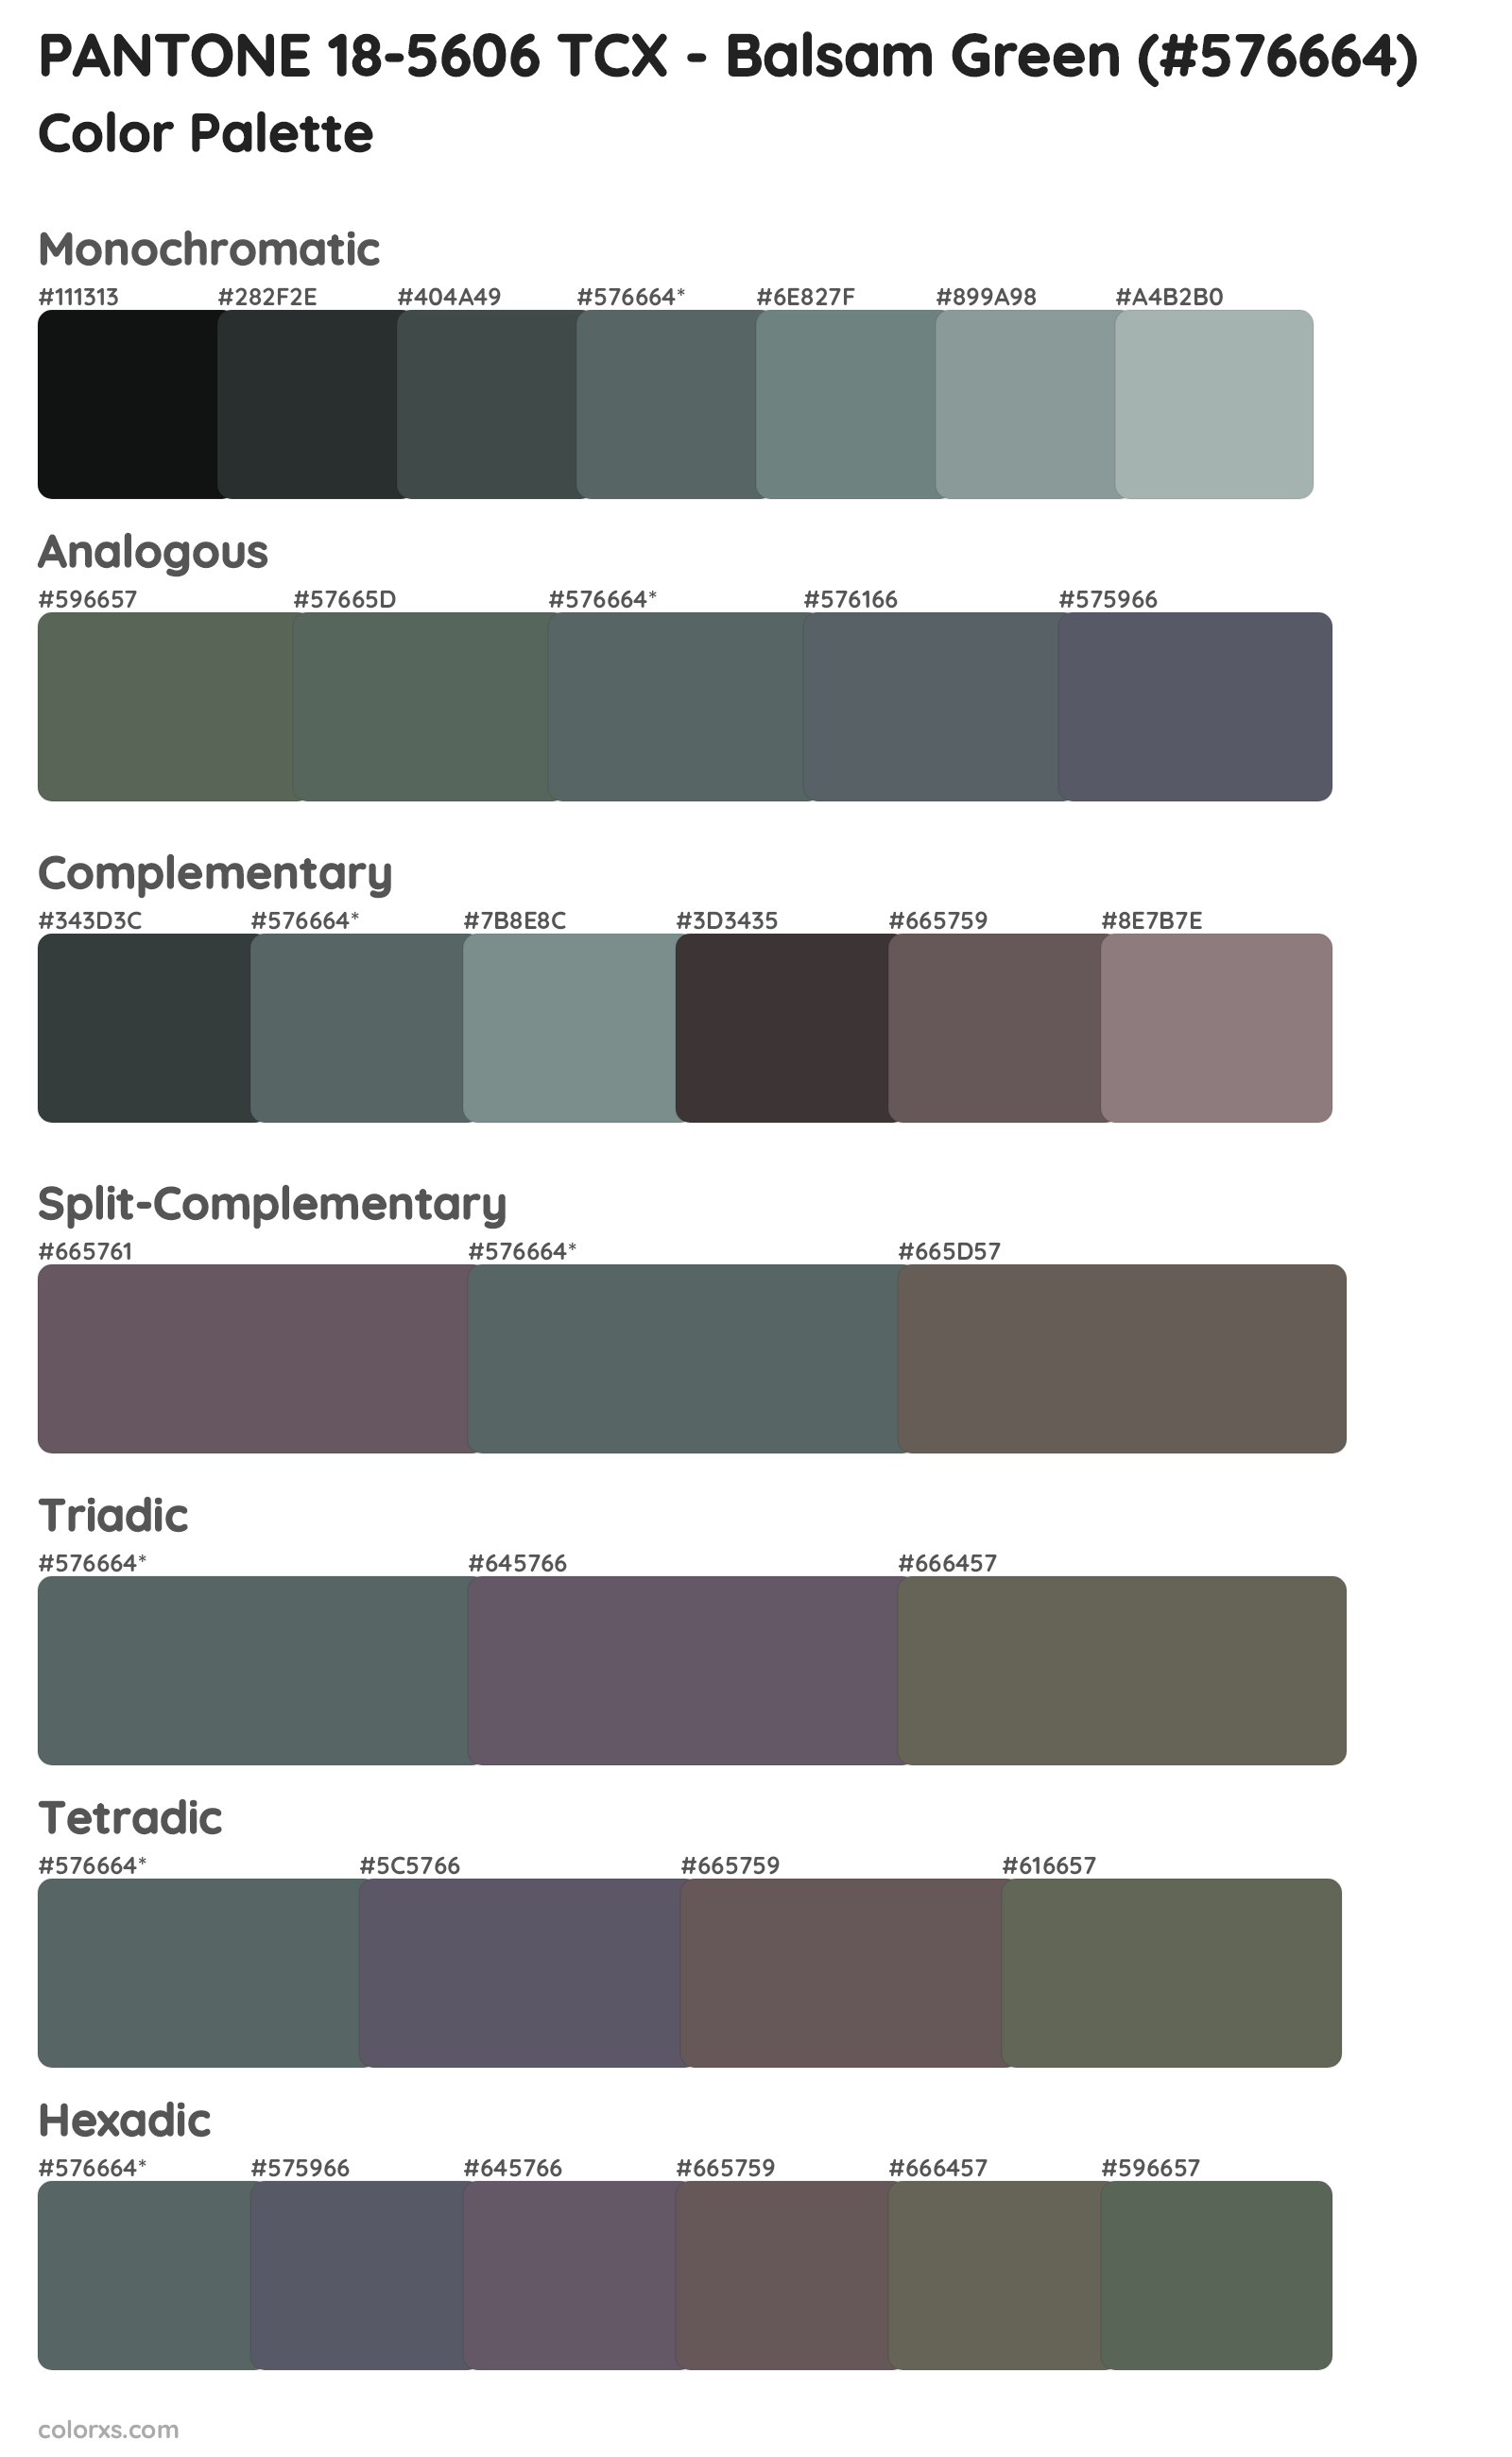 PANTONE 18-5606 TCX - Balsam Green Color Scheme Palettes